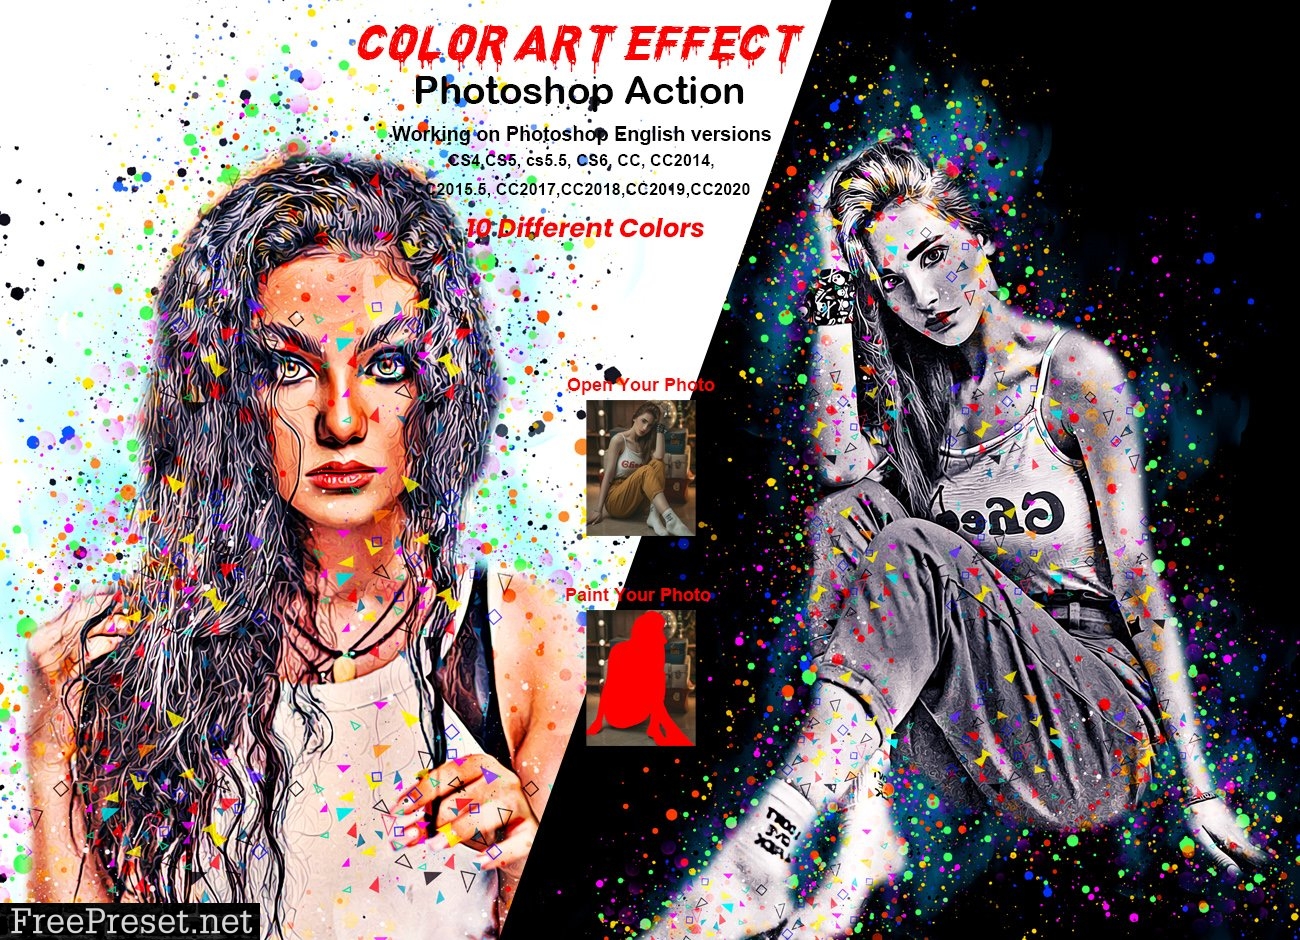 Color Art Effect Photoshop Action 5898461